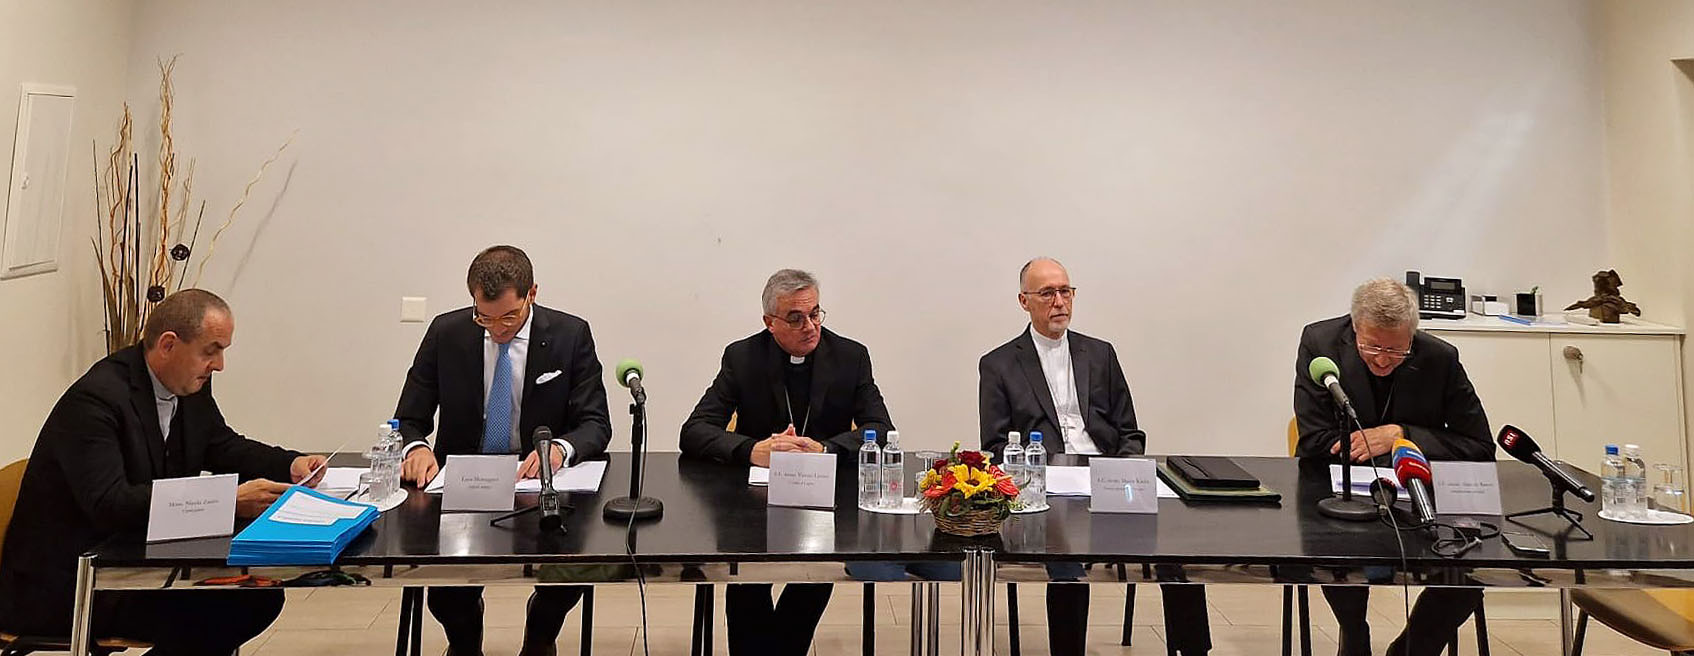 A la conférence de presse, Mgr Lazzeri avec, à sa gauche, le nonce apostolique en Suisse Mgr Martin Krebs et Mgr Alain de Raemy, nommé administrateur apostolique du diocèse de Lugano  | © Cristina Vonzun/catt.ch